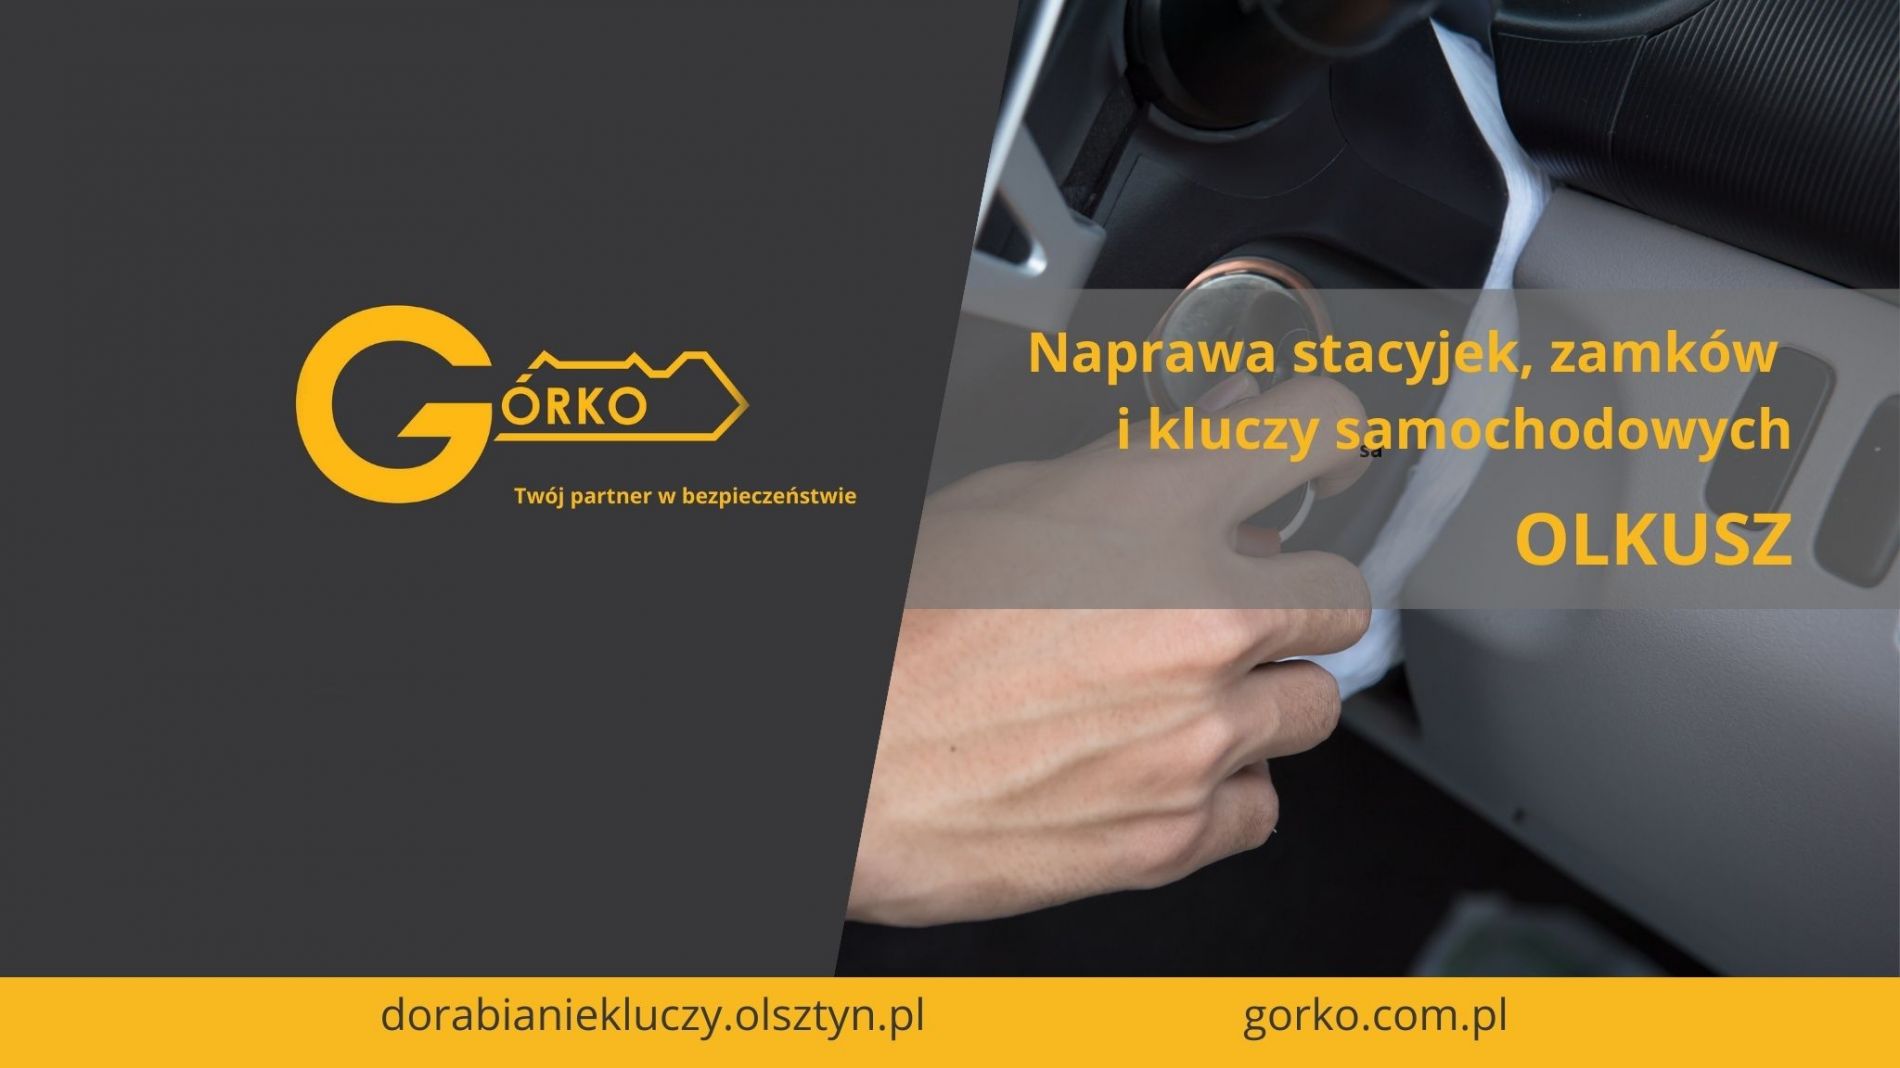 Naprawa stacyjek, zamków i kluczy samochodowych – Olkusz (Usługa zdalna)